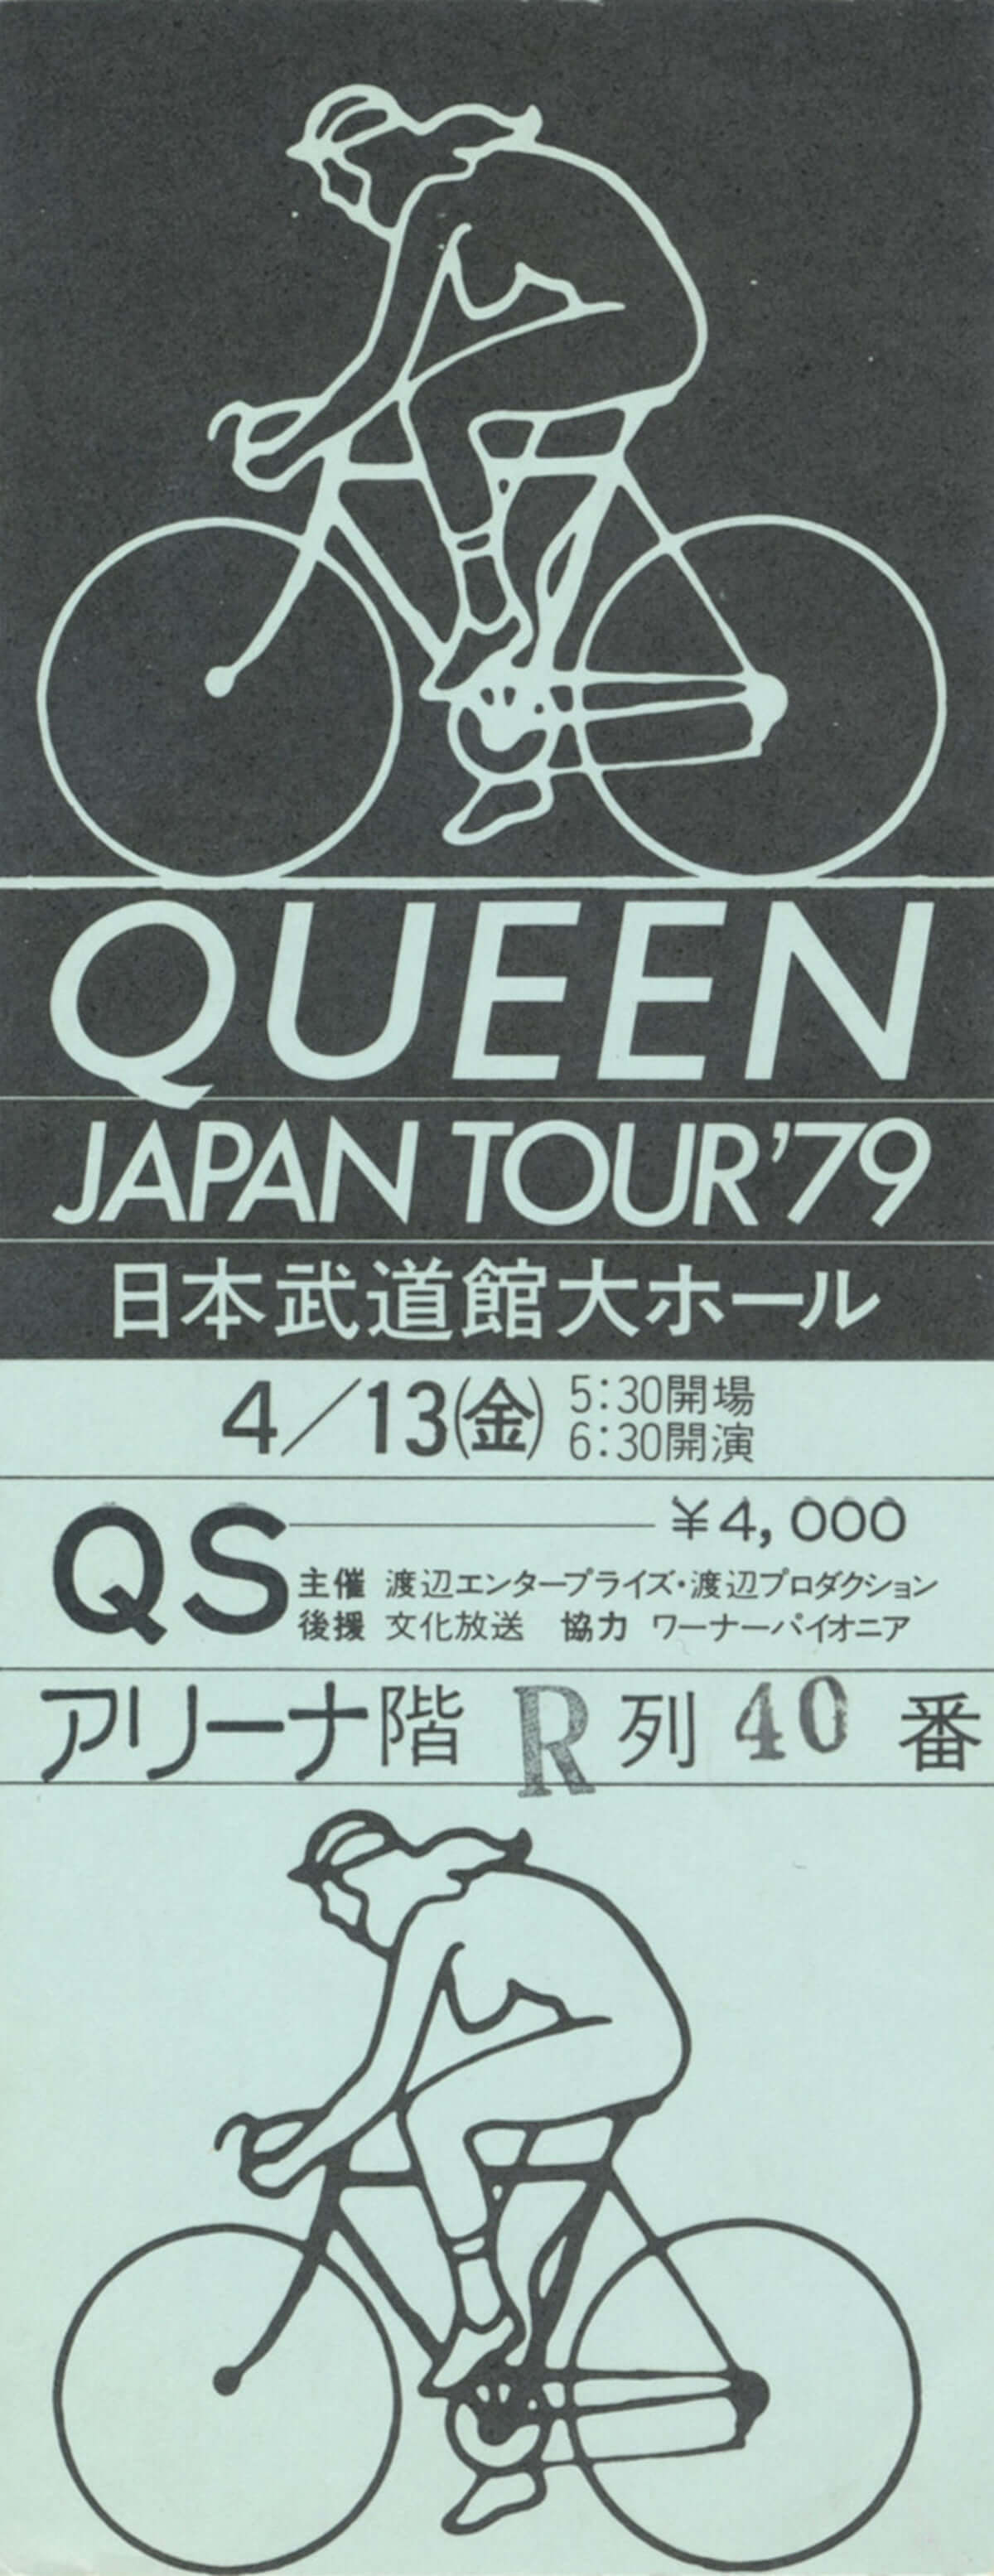 日本中のクイーン・ファンが一堂に会するイベント、クイーン・デイ今年も開催！ music190212-queen-2-1200x3109